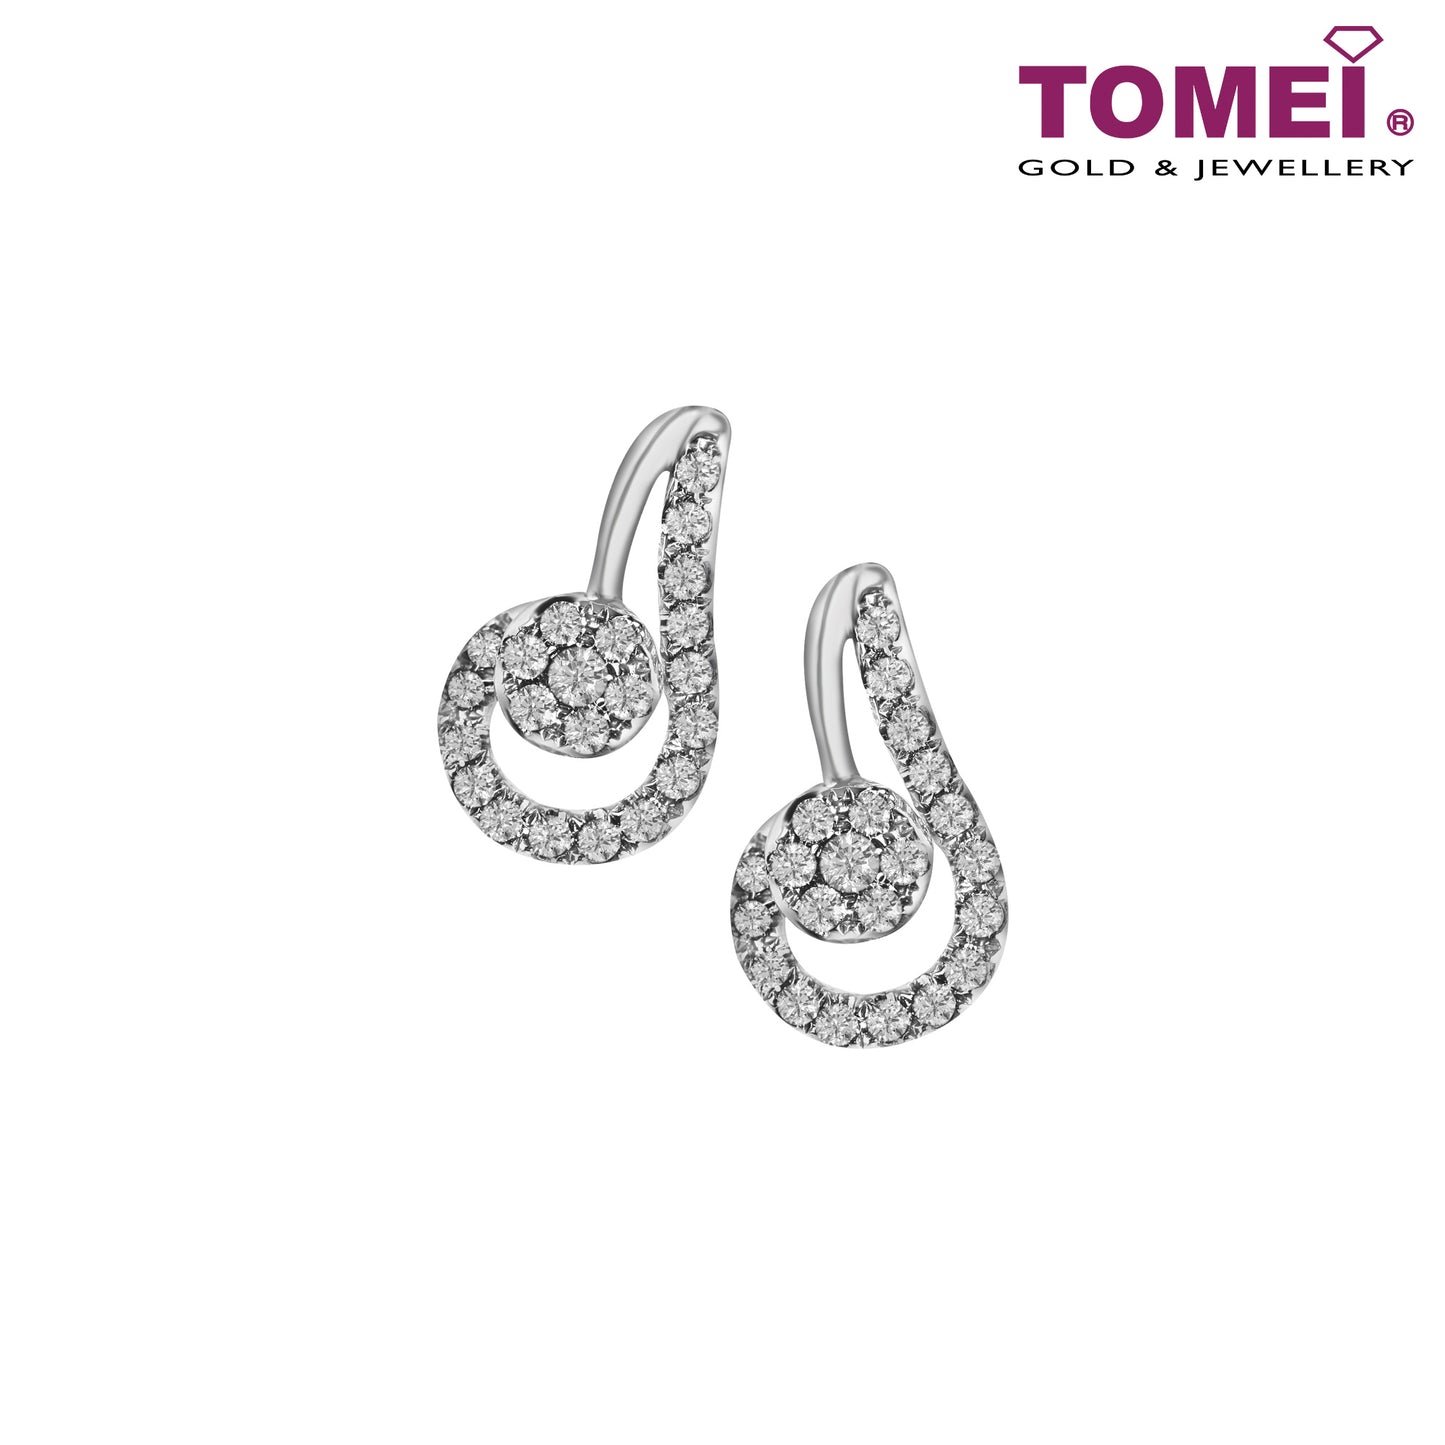 TOMEI Scintillante Diamond Earrings, White Gold 375 (E1453)